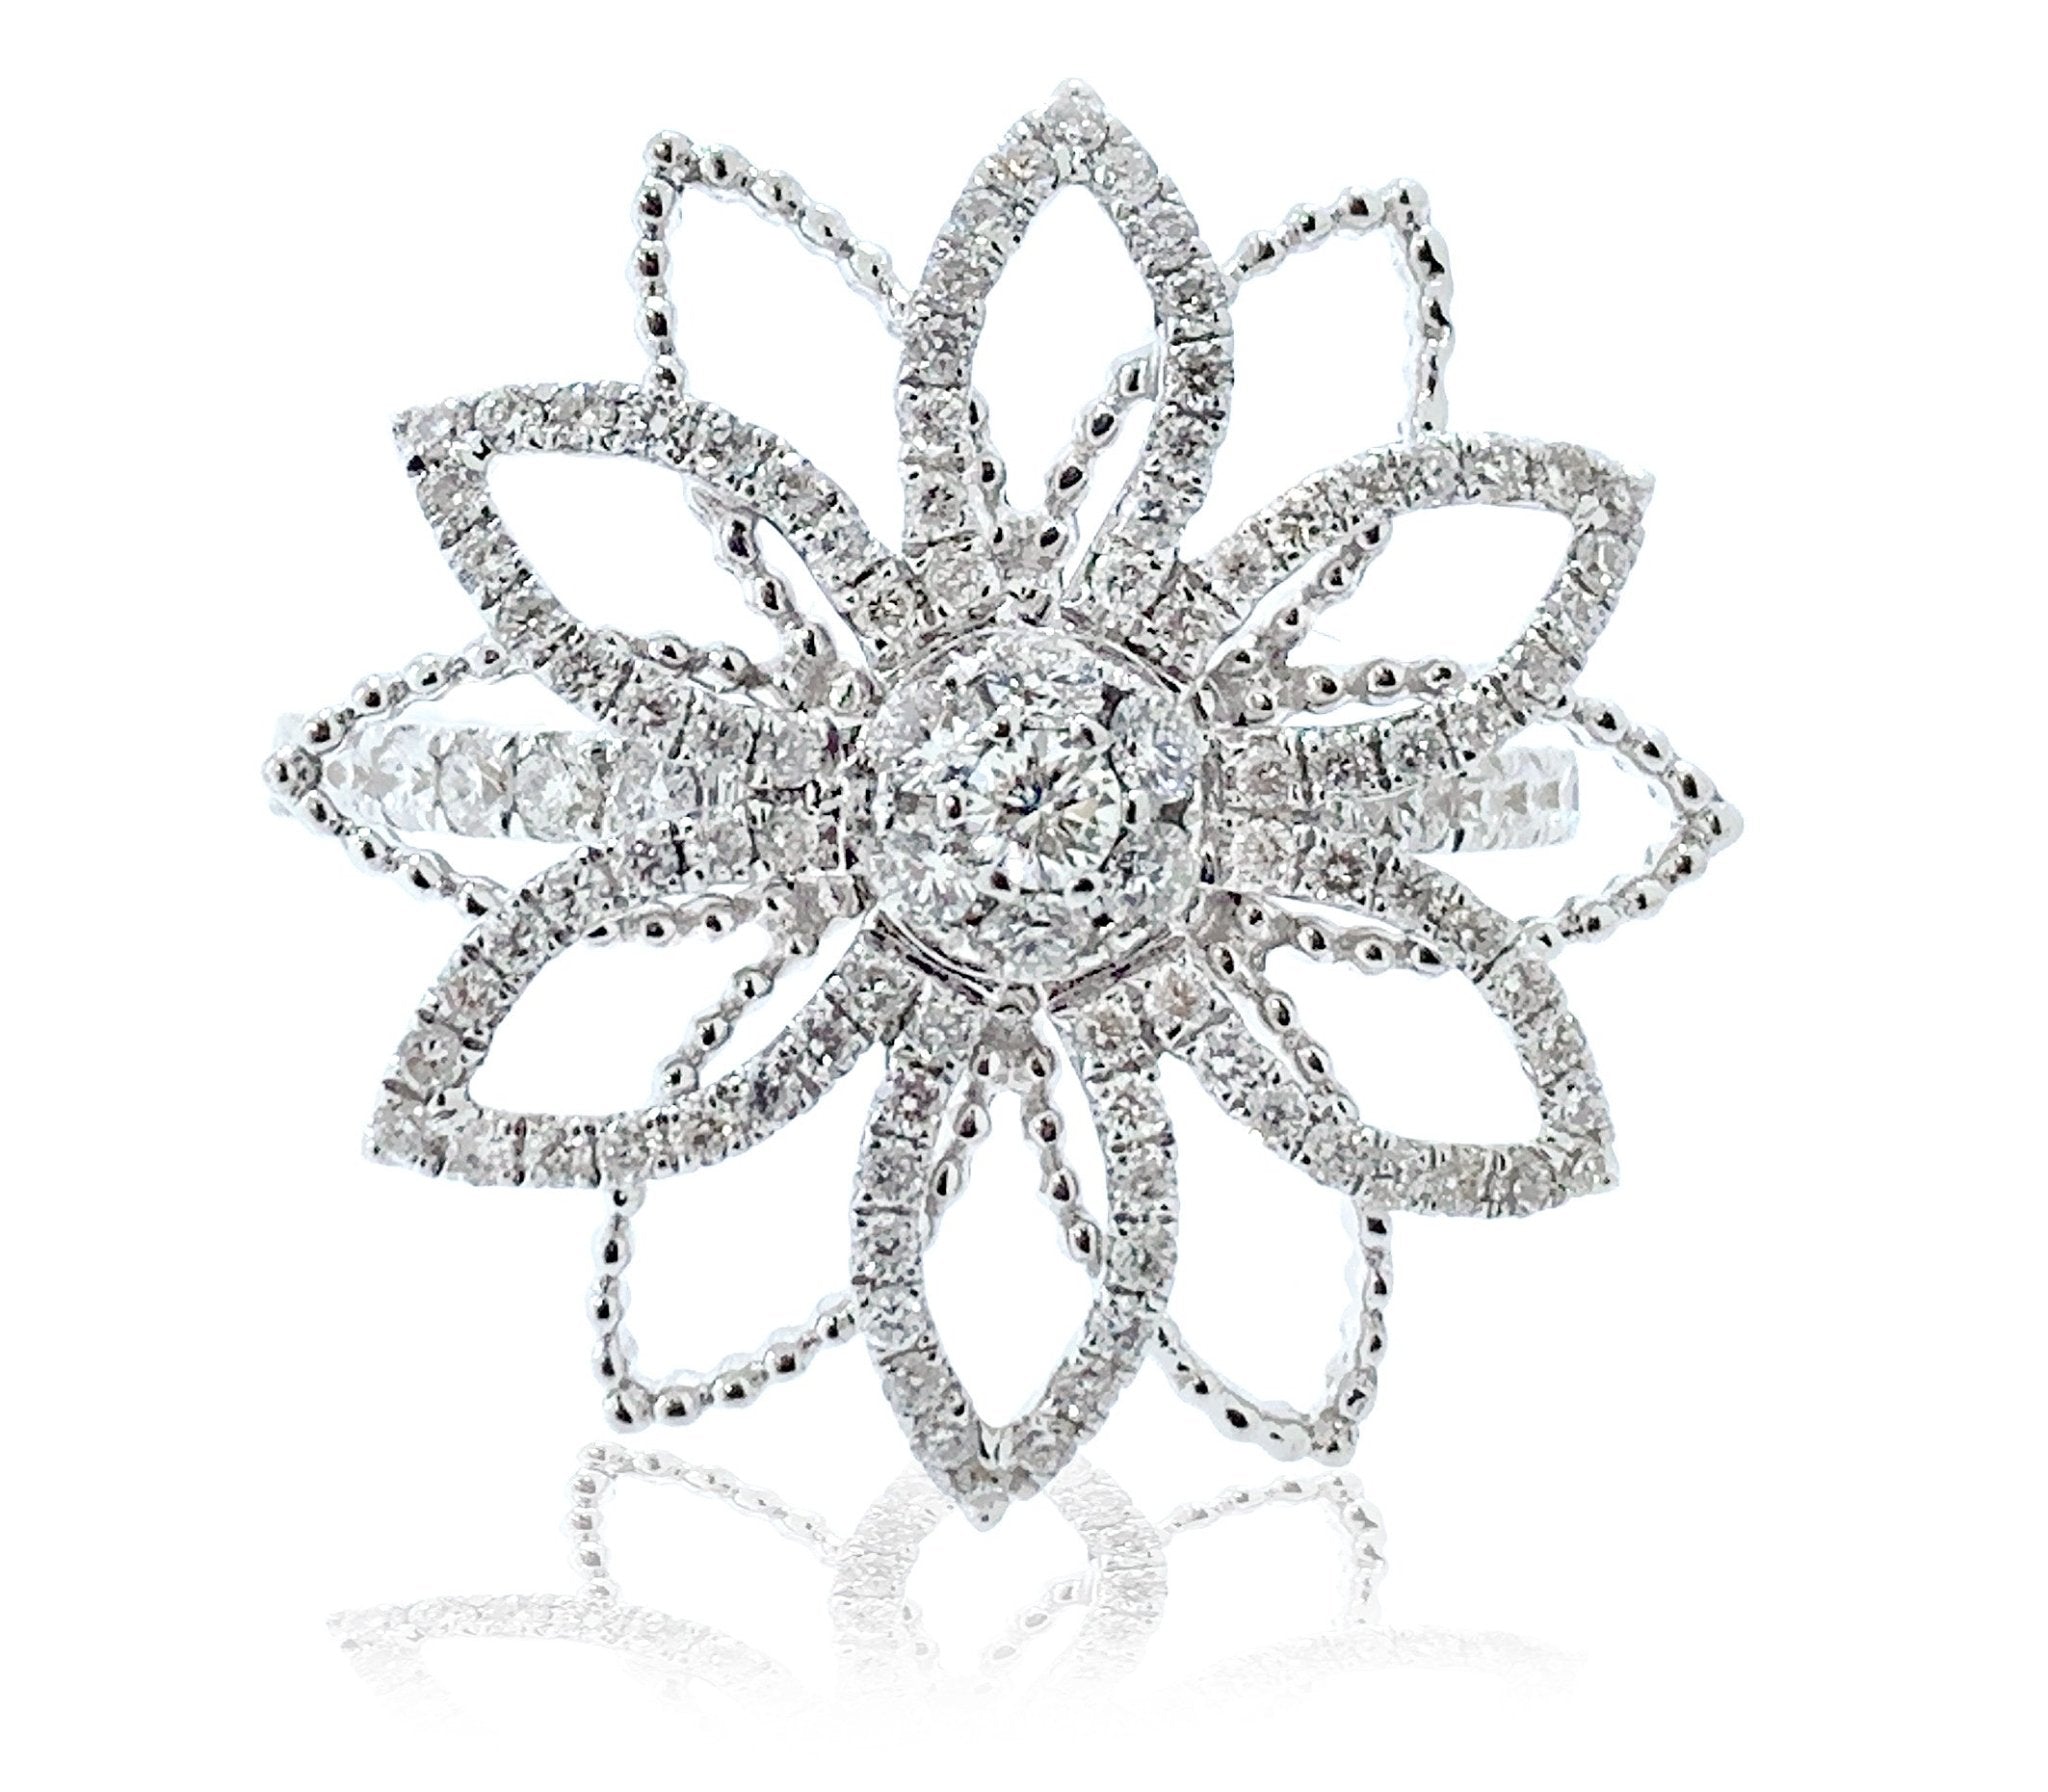 White Gold Diamond Flower Ring - ForeverJewels Design Studio 8